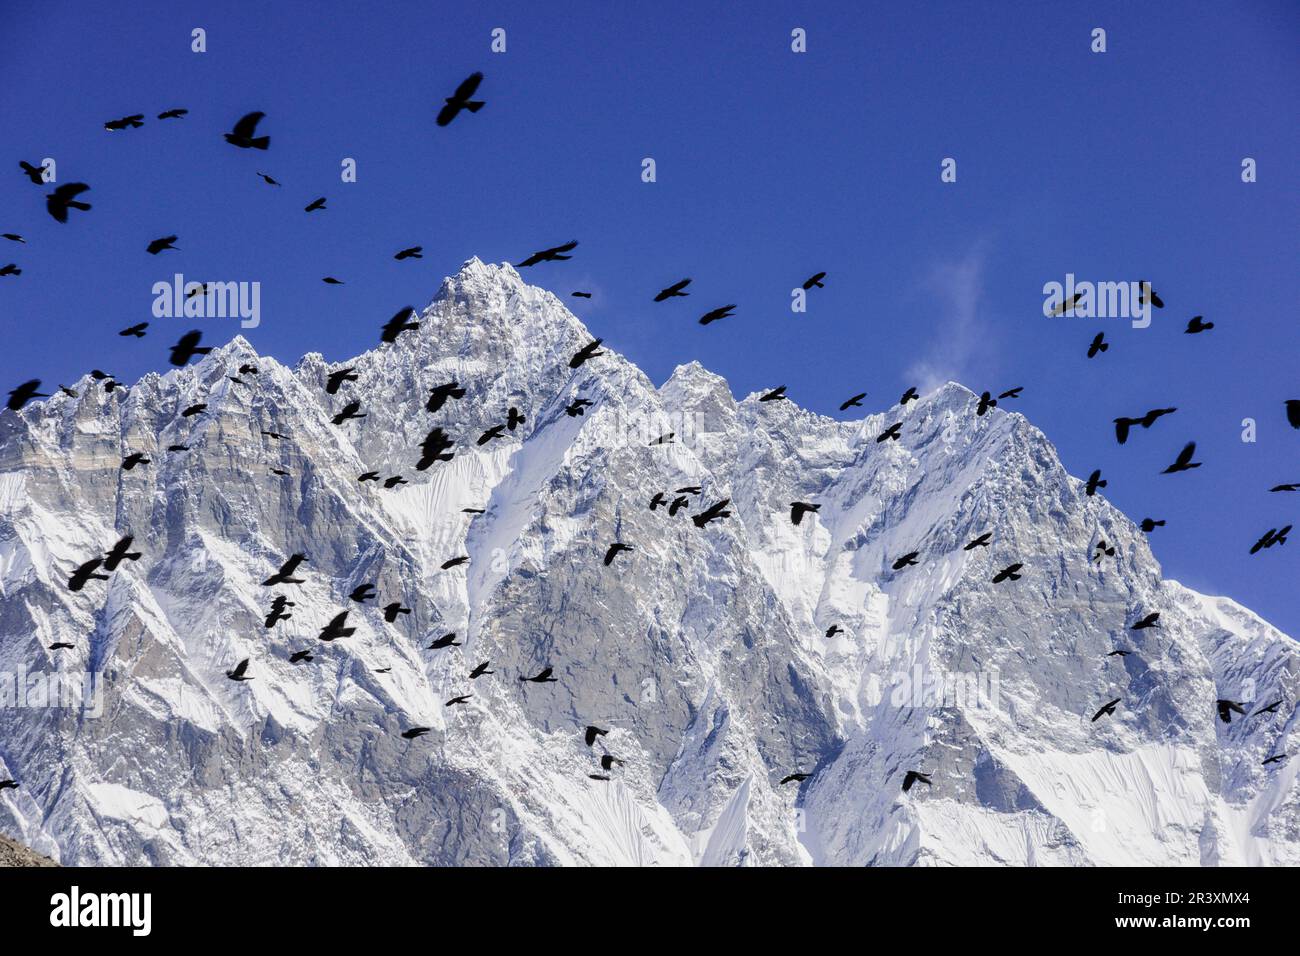 chovas del himalaya.Chhukhung.glaciar Lhotse.Sagarmatha National Park, Khumbu Himal, Nepal, Asia. Stock Photo